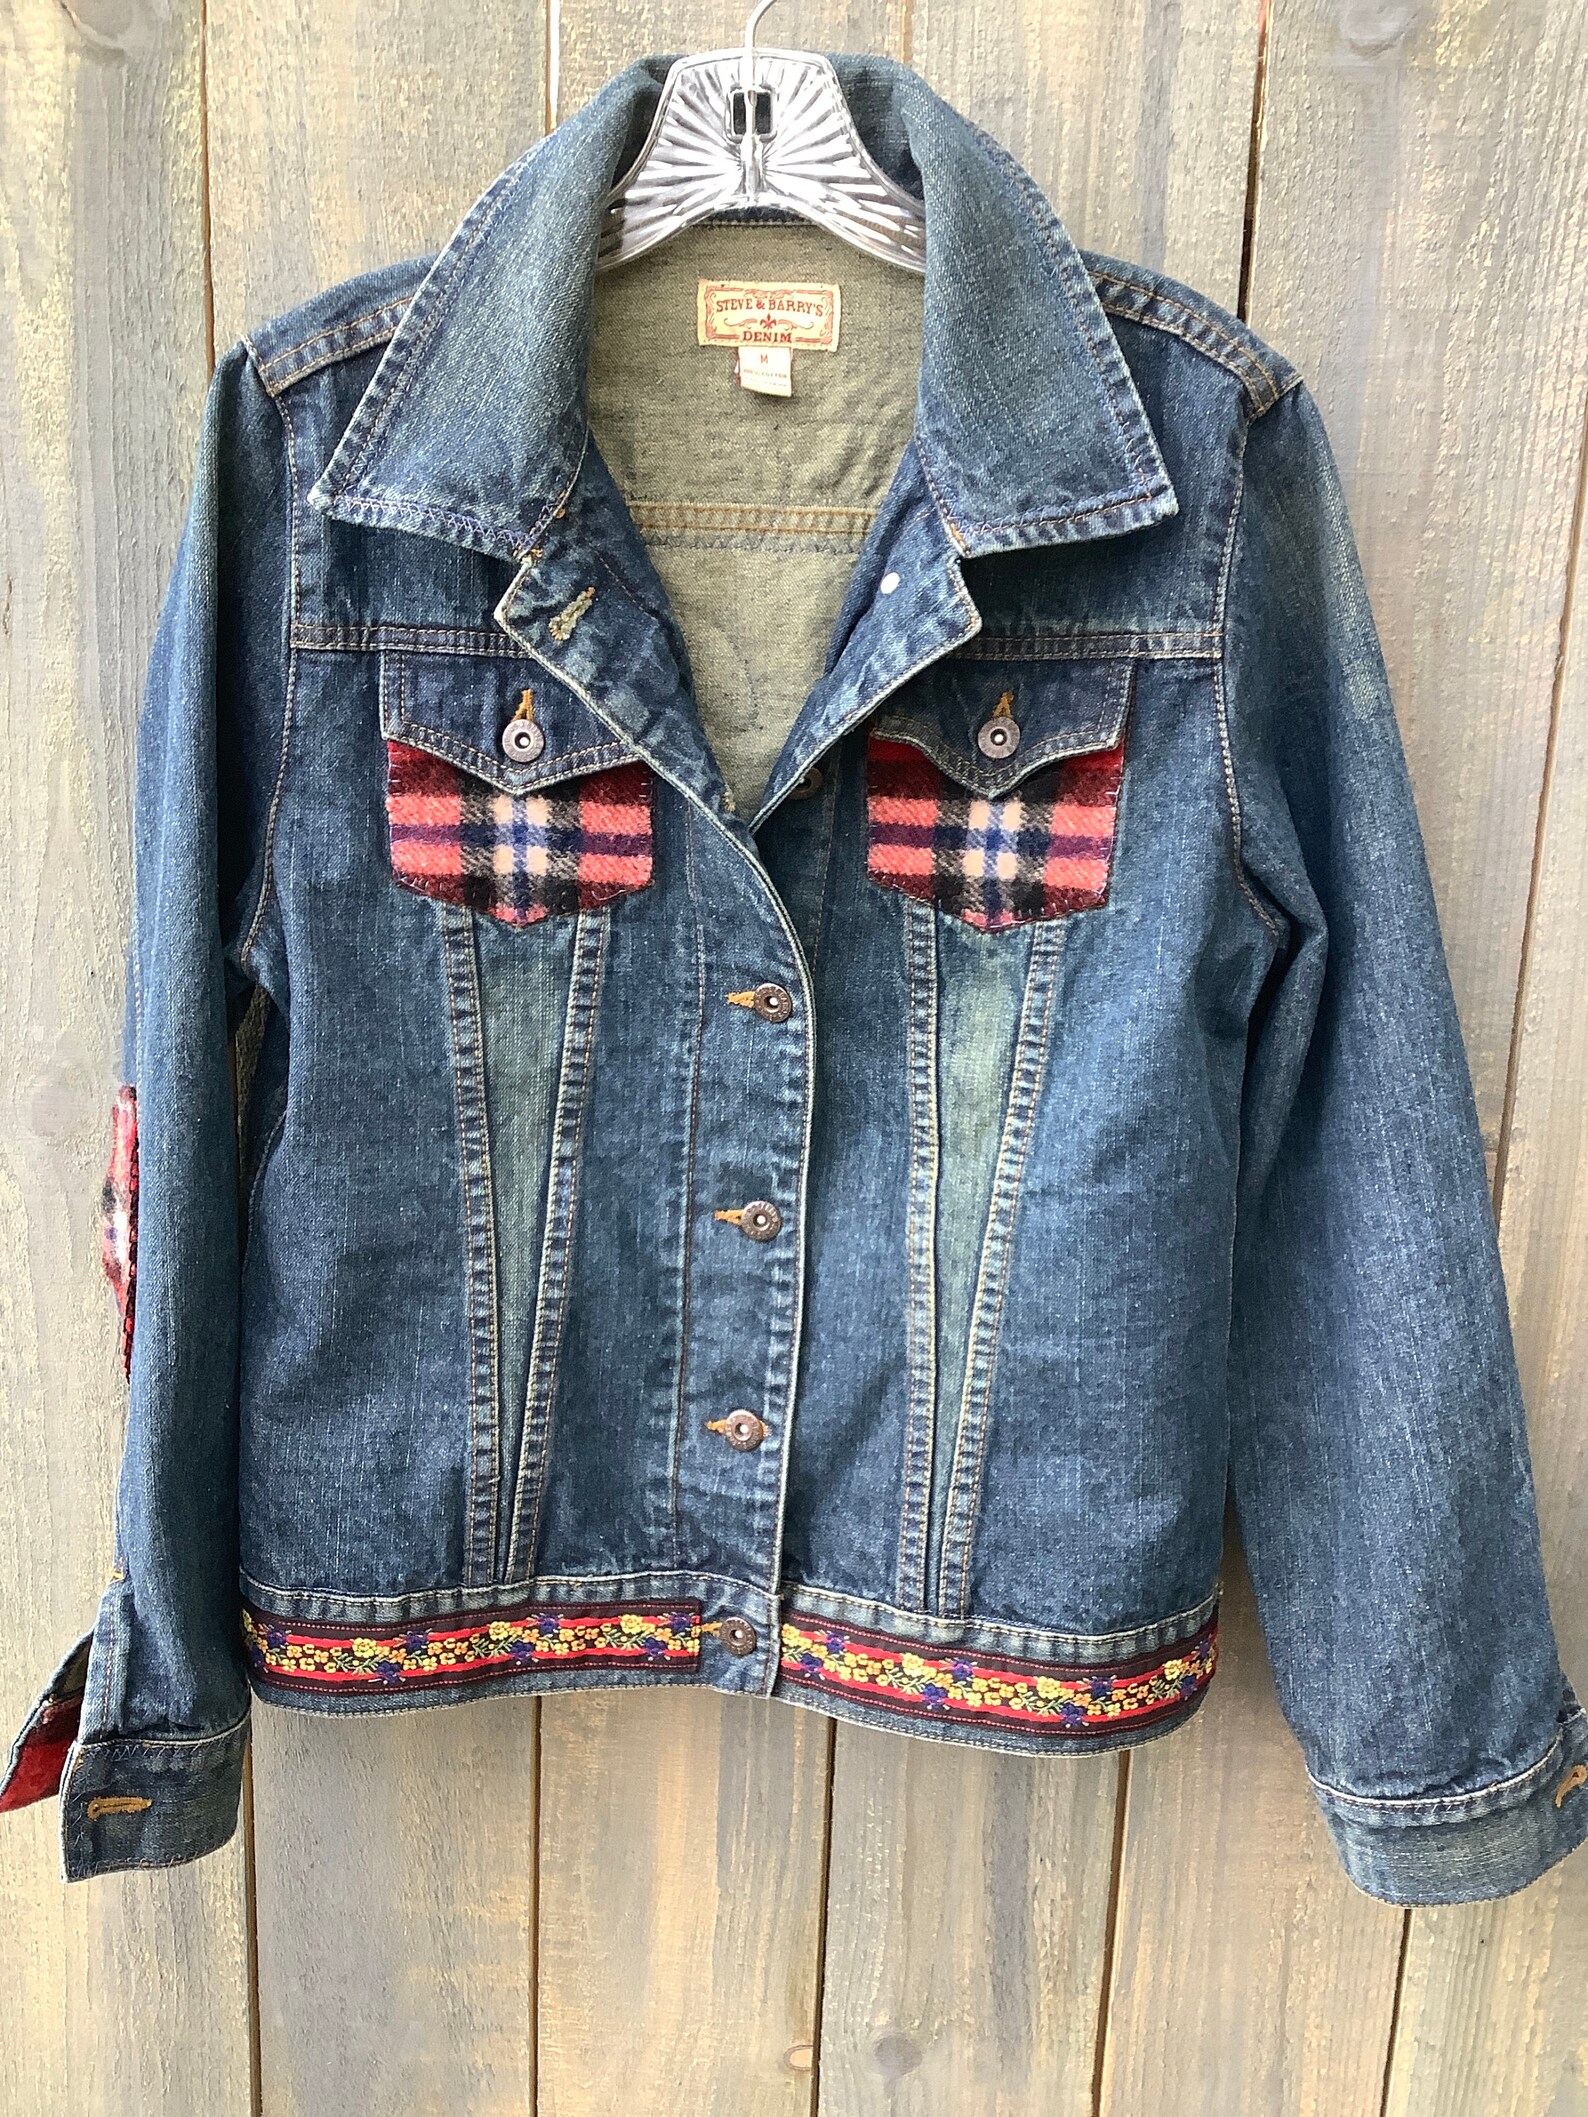 Embellished denim jean jacket 100% wool felted plaid | Etsy